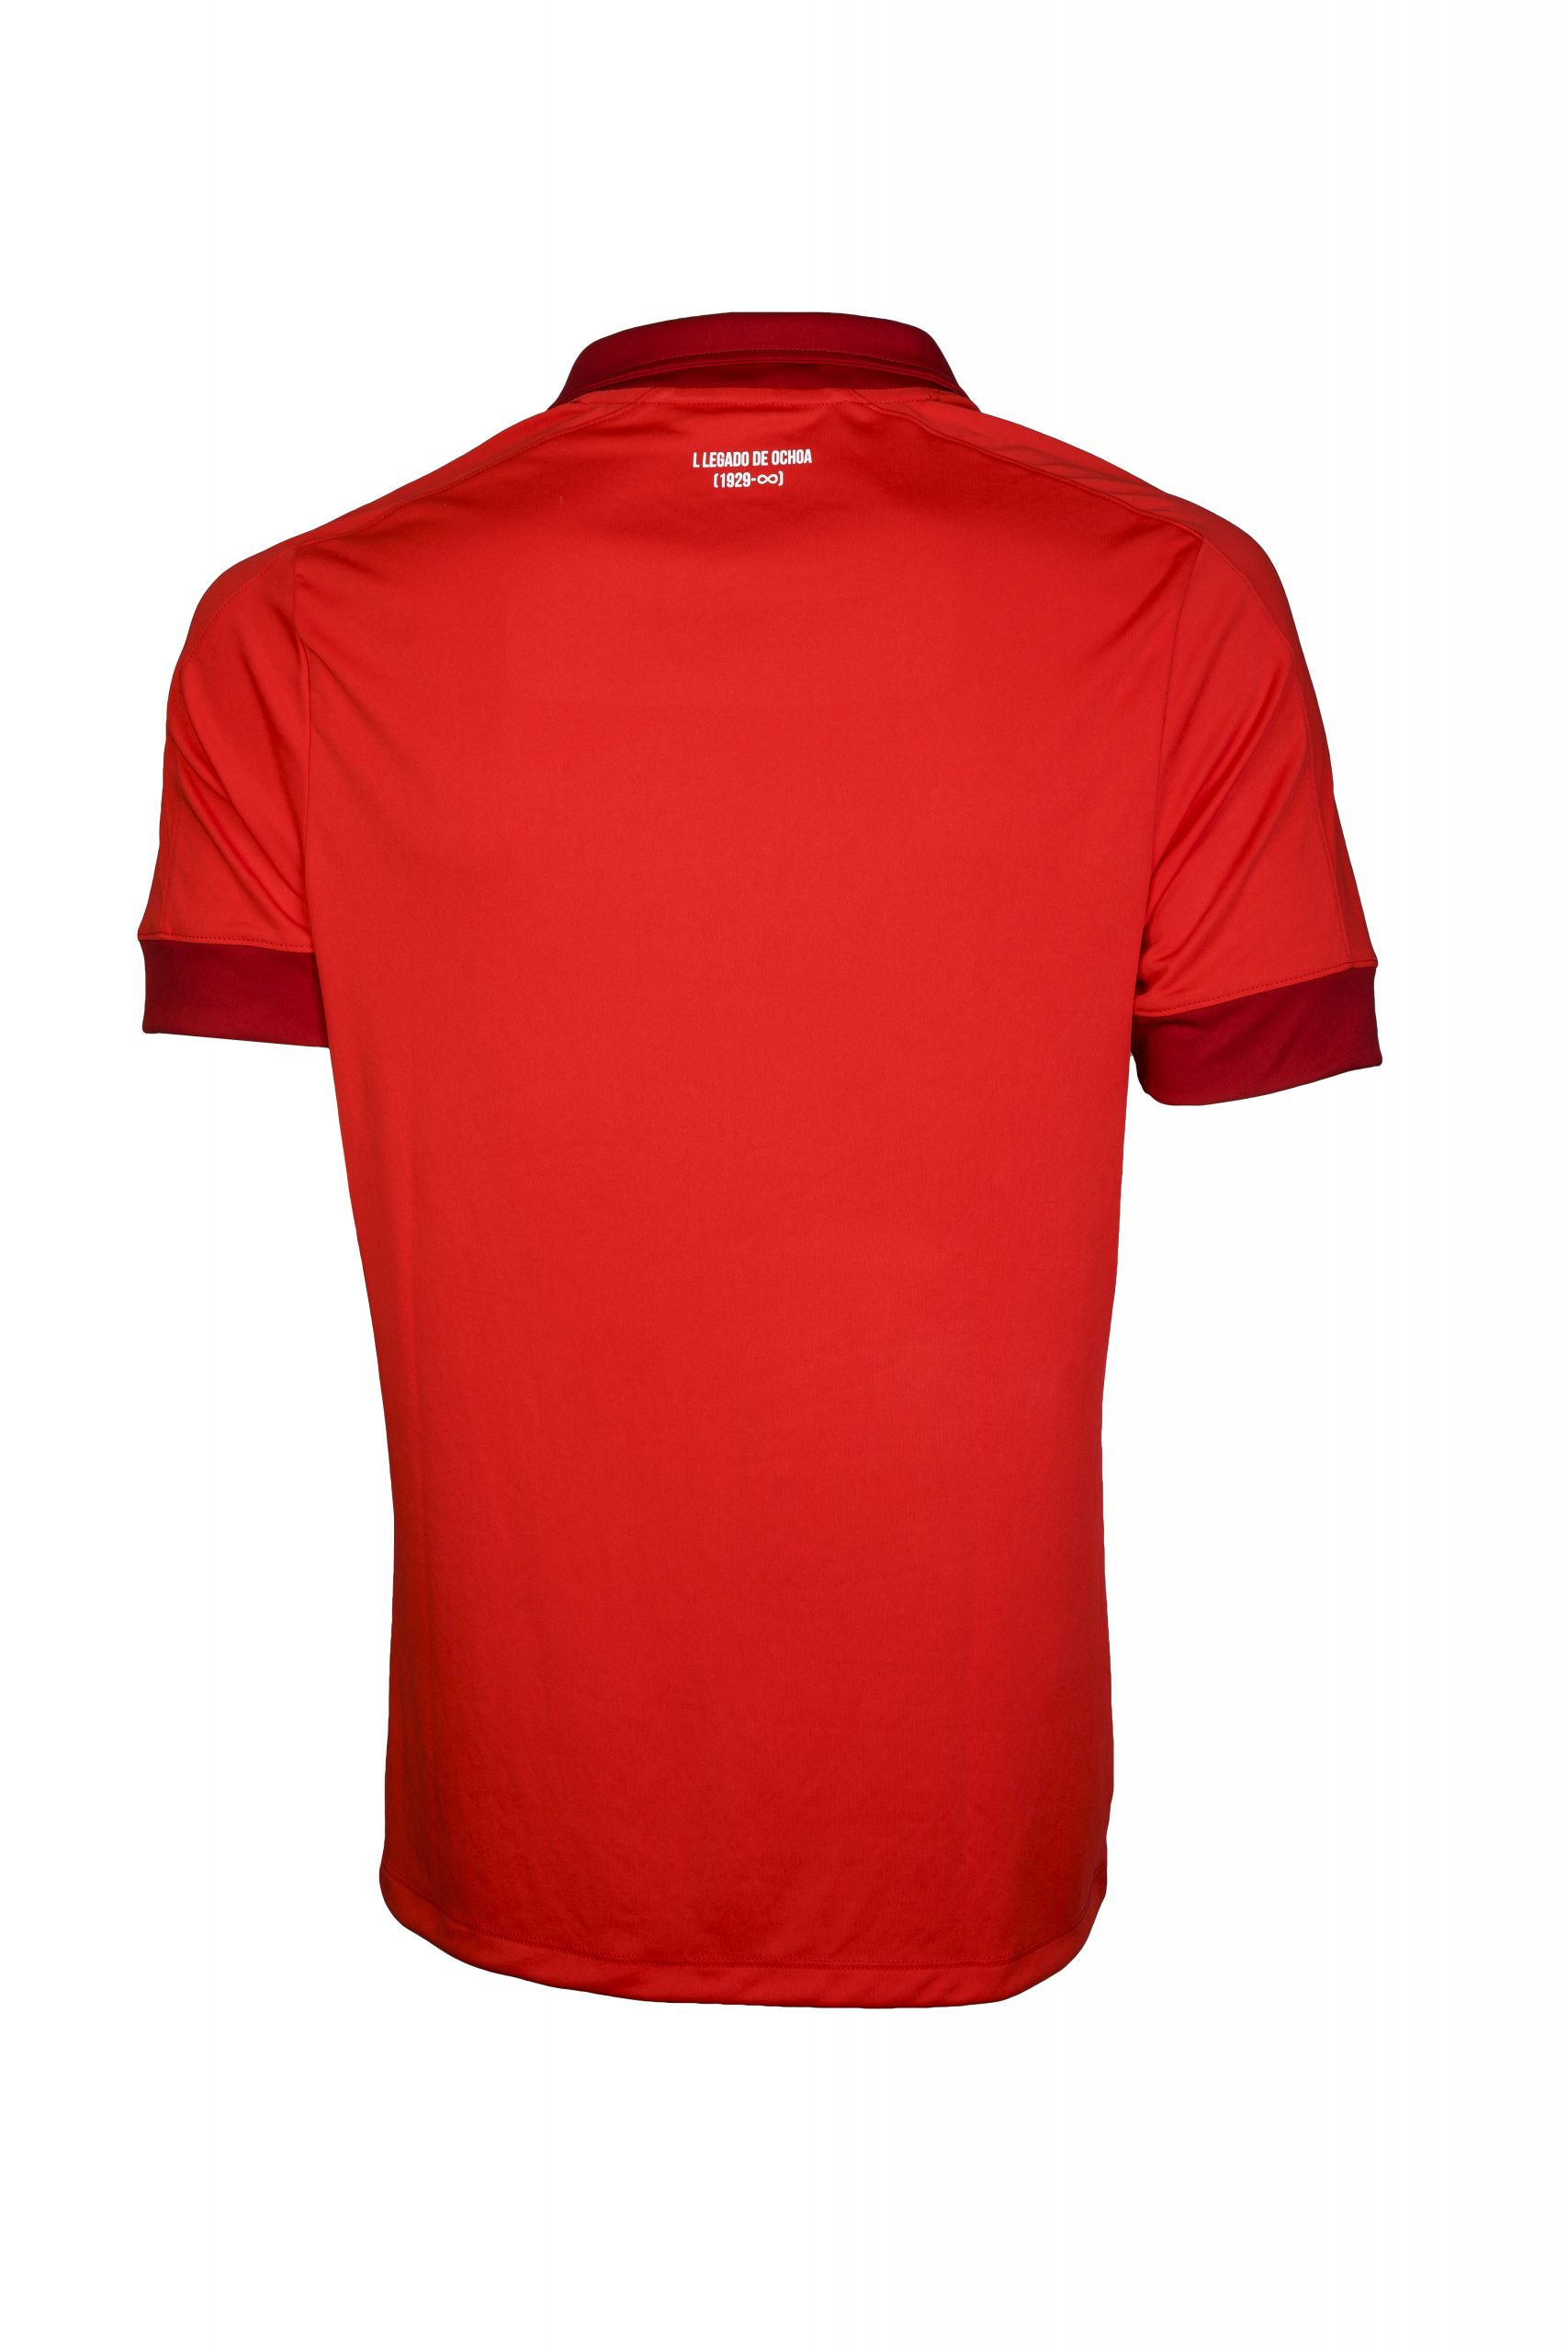 América de Cali 2022 Umbro Home Kit - Football Shirt Culture - Latest ...